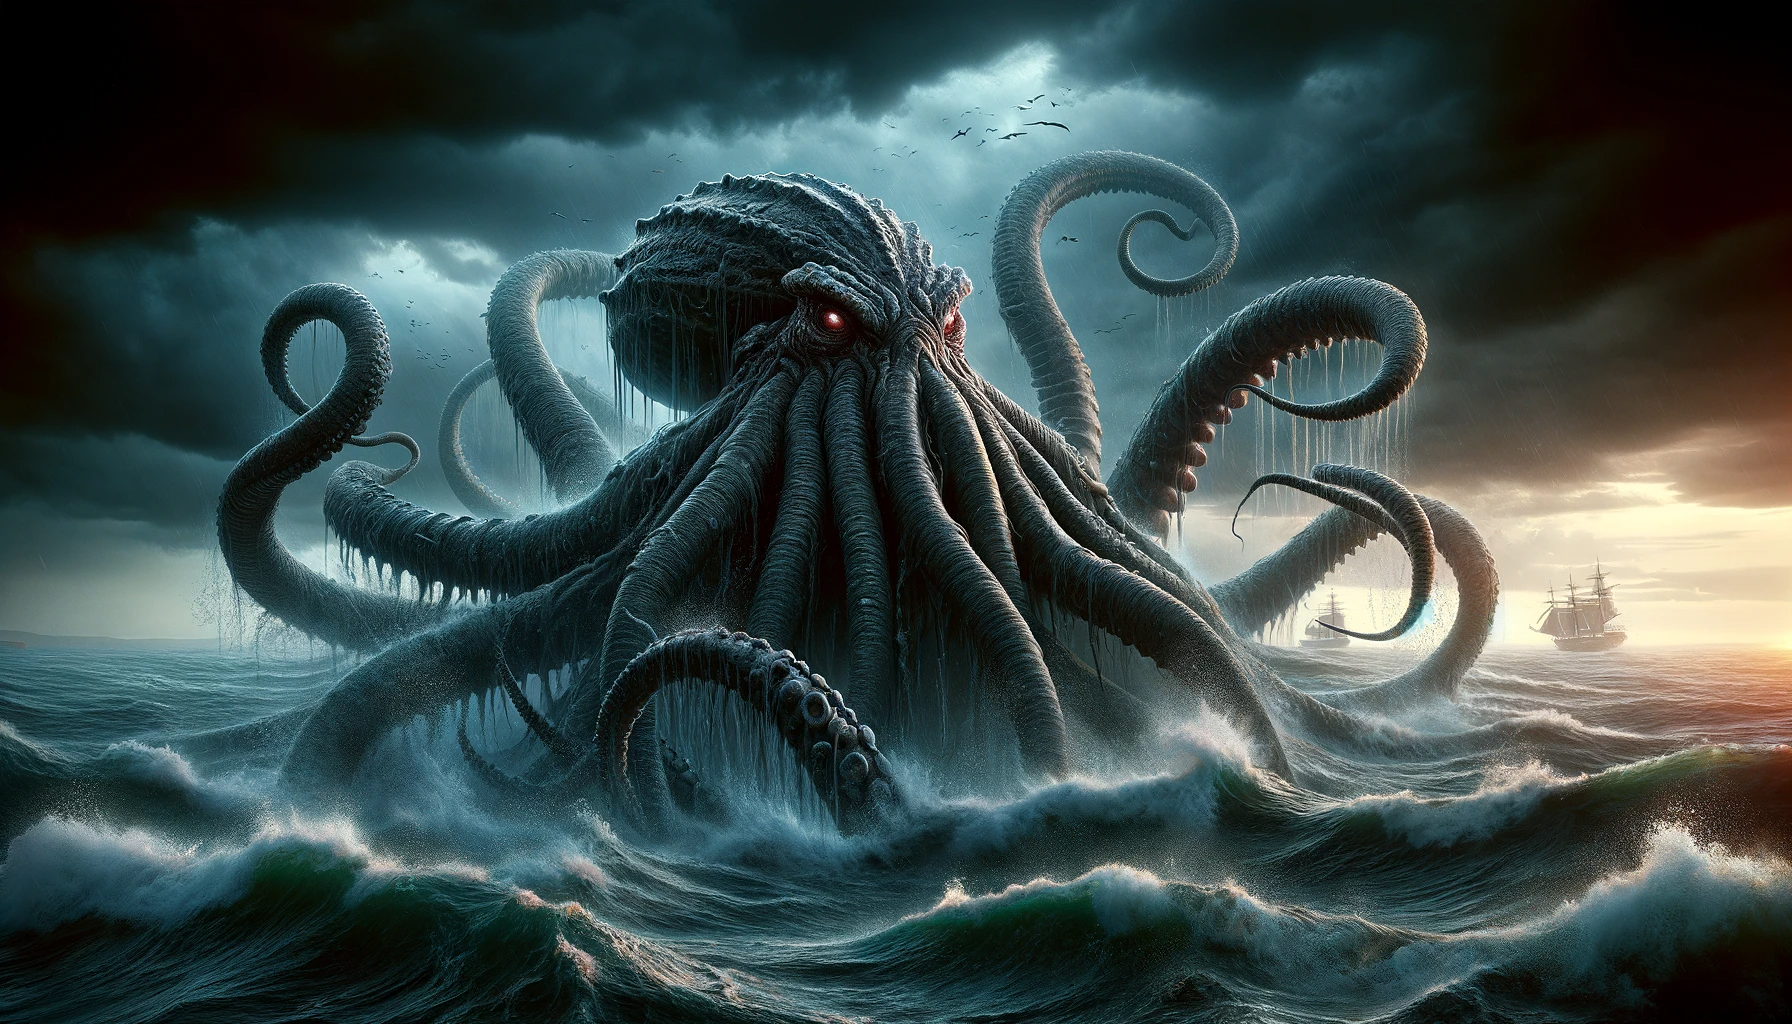 The Kraken: Sea Monster or Giant Squid? Debunking the Myth